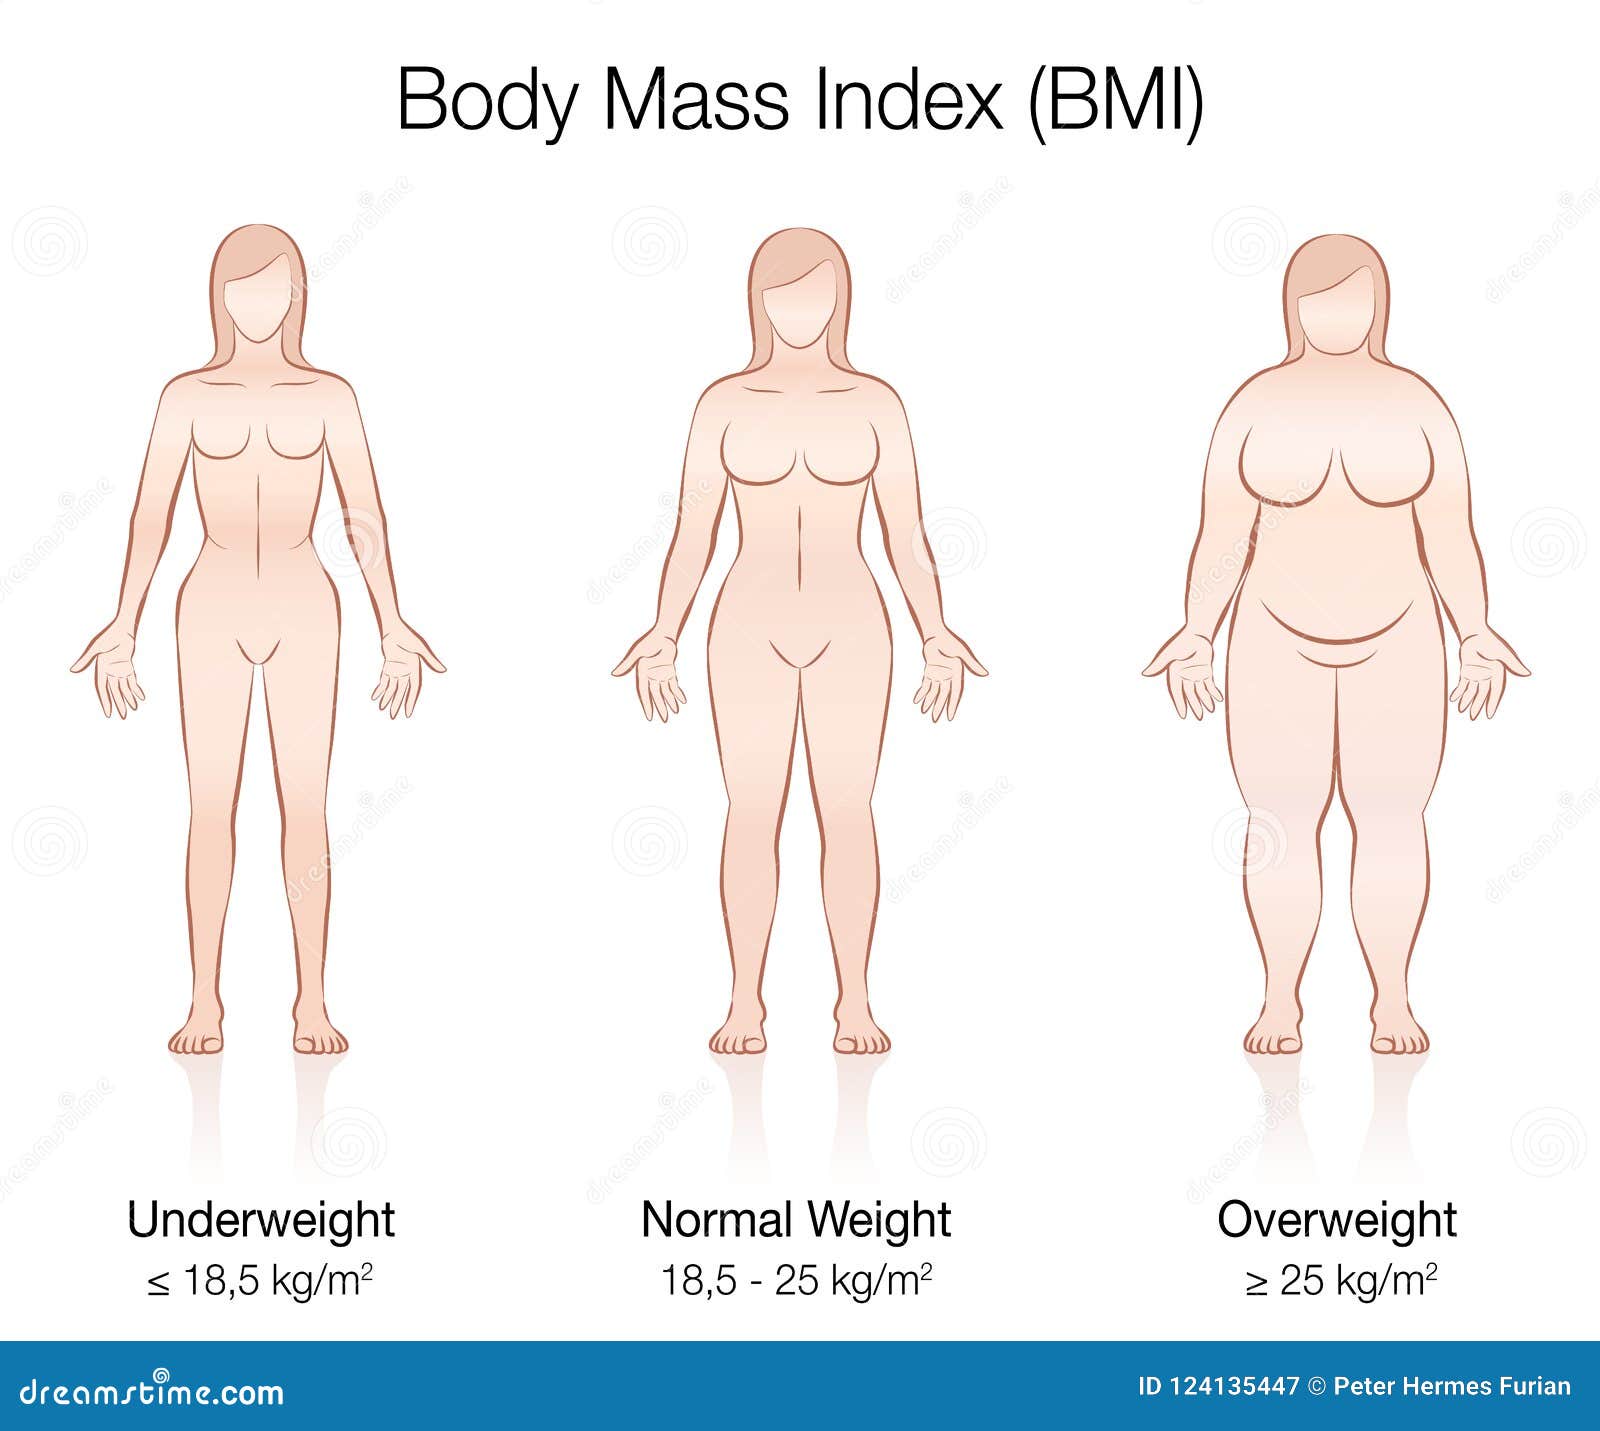 Female bmi 20 BMI CALCULATOR